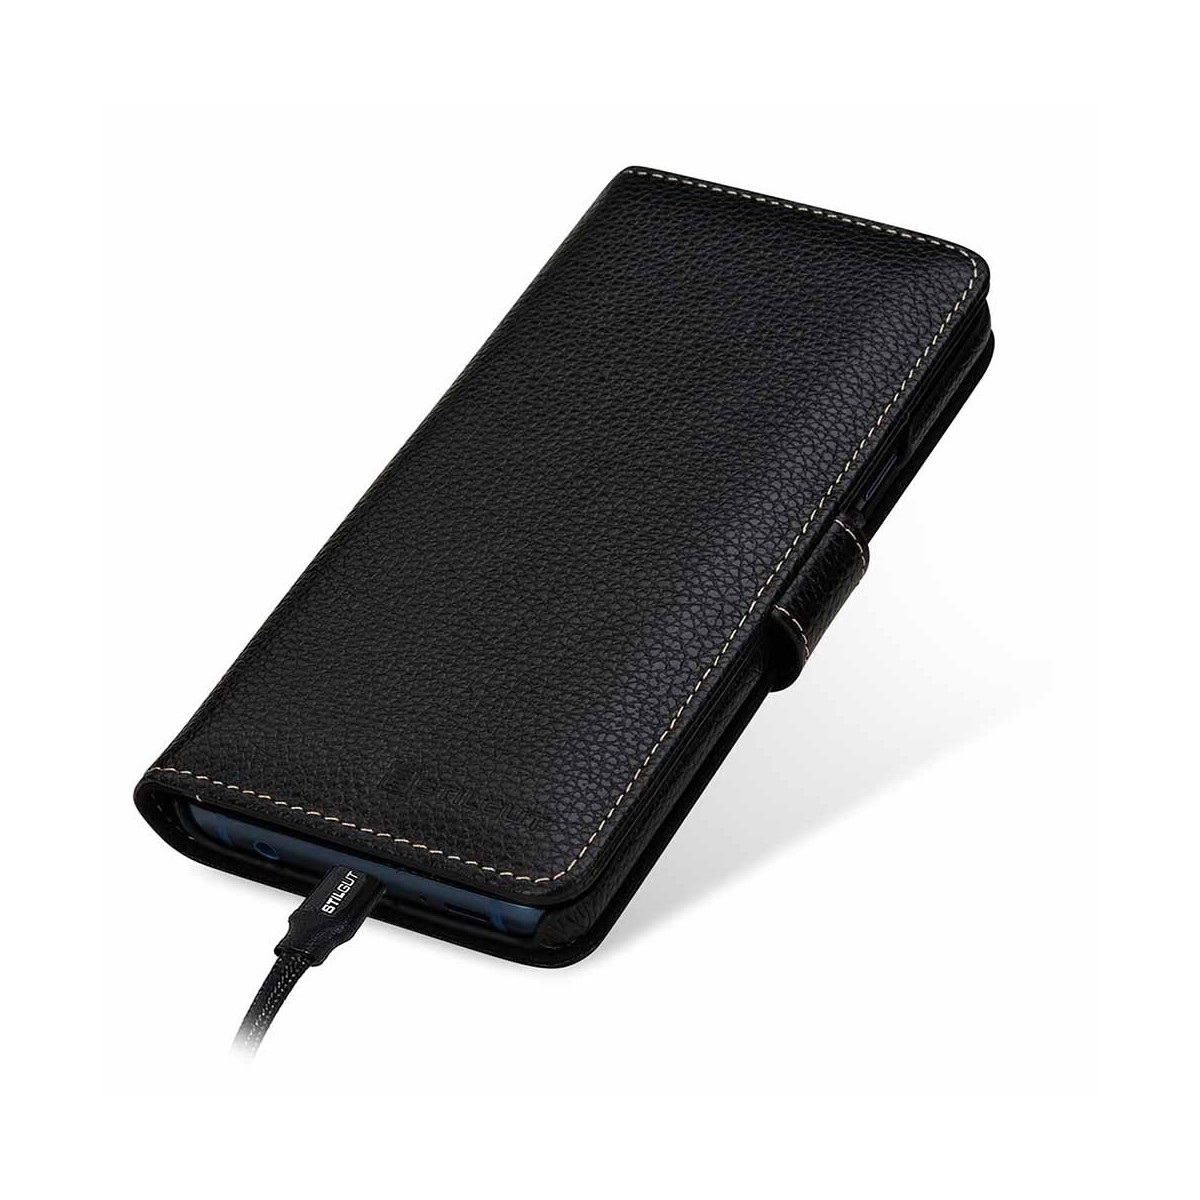 Etui Galaxy S9+ porte-cartes grainé noir en cuir véritable - Stilgut